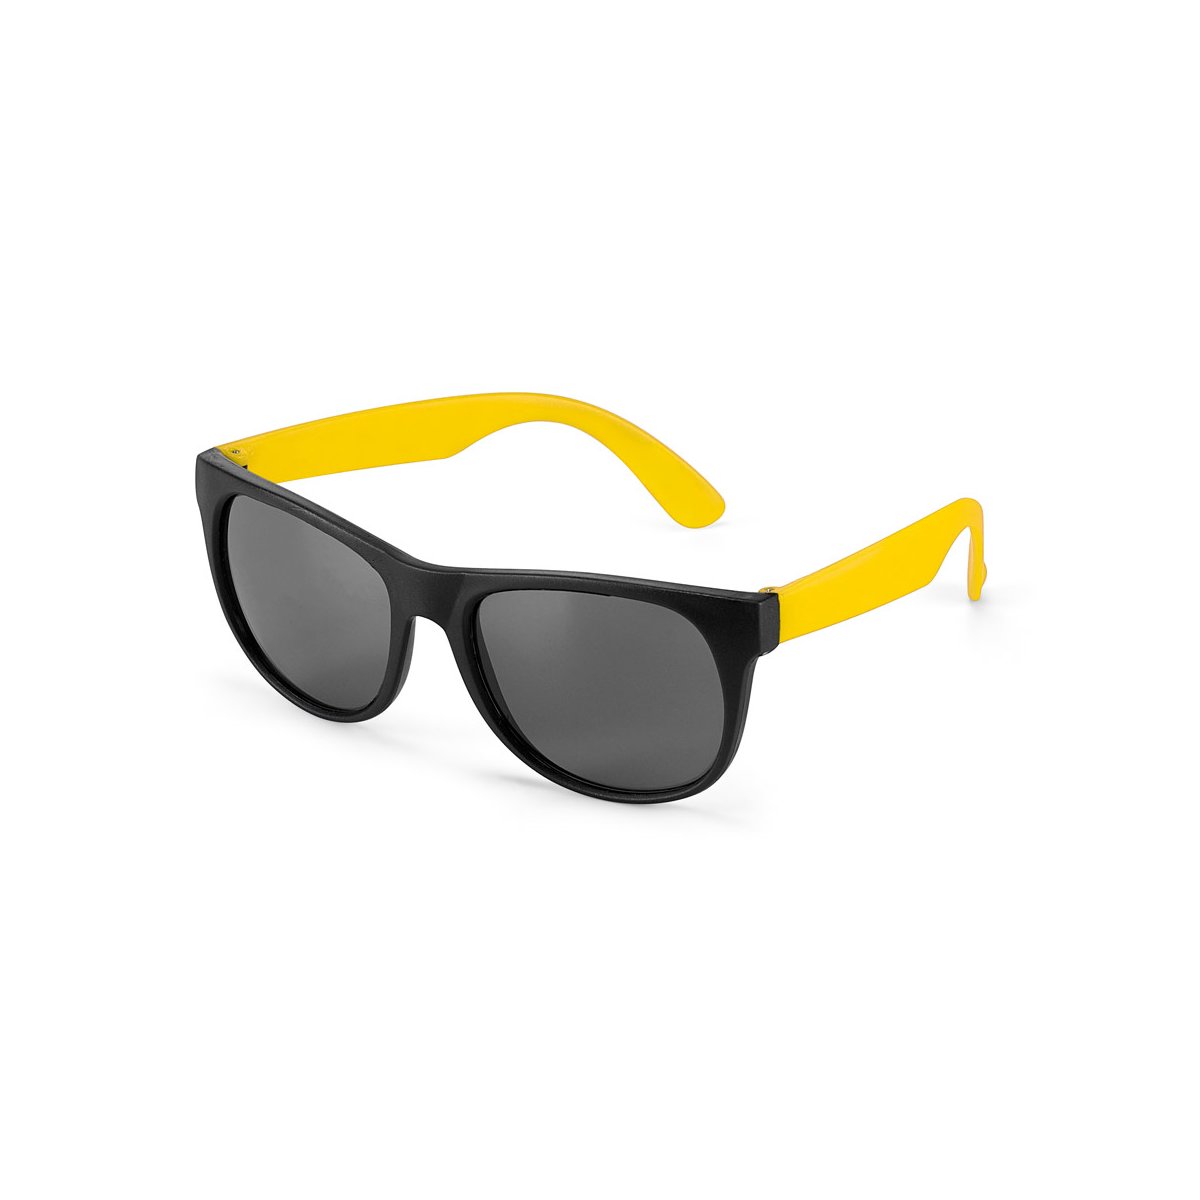 SANTORINI. Okulary przeciwsłoneczne - Żółty